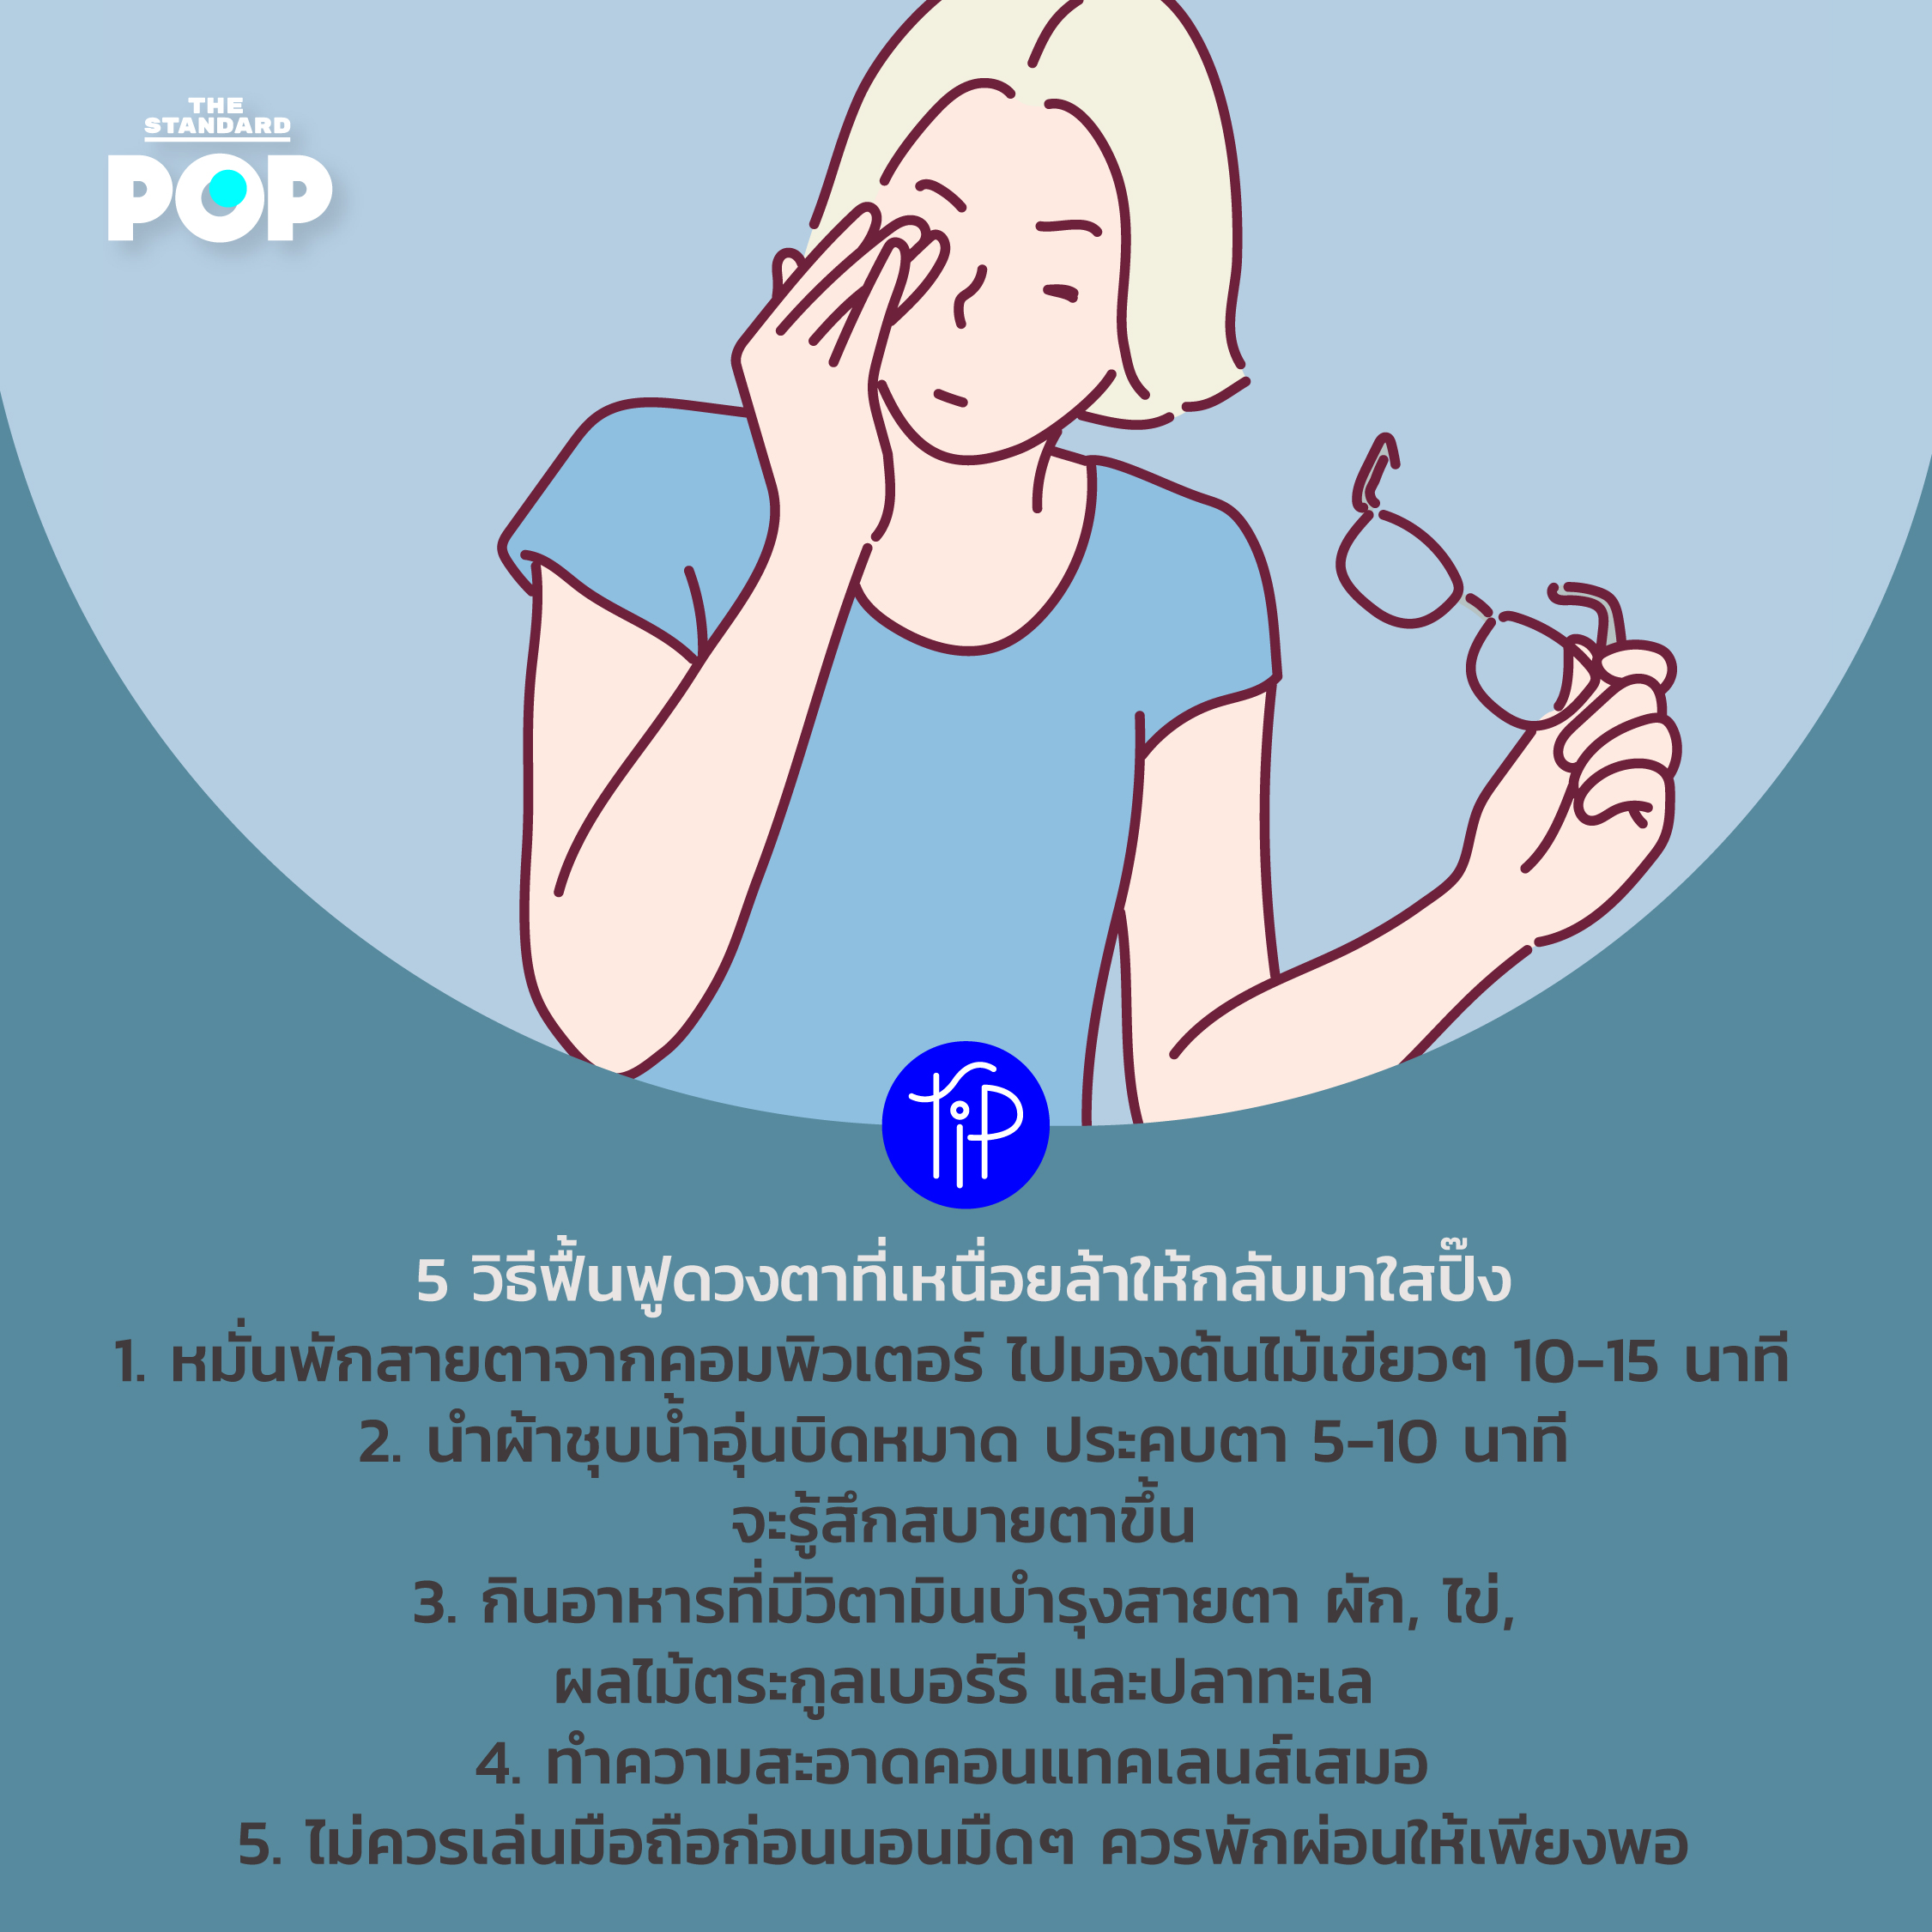 Pop Tip 3-9 nov